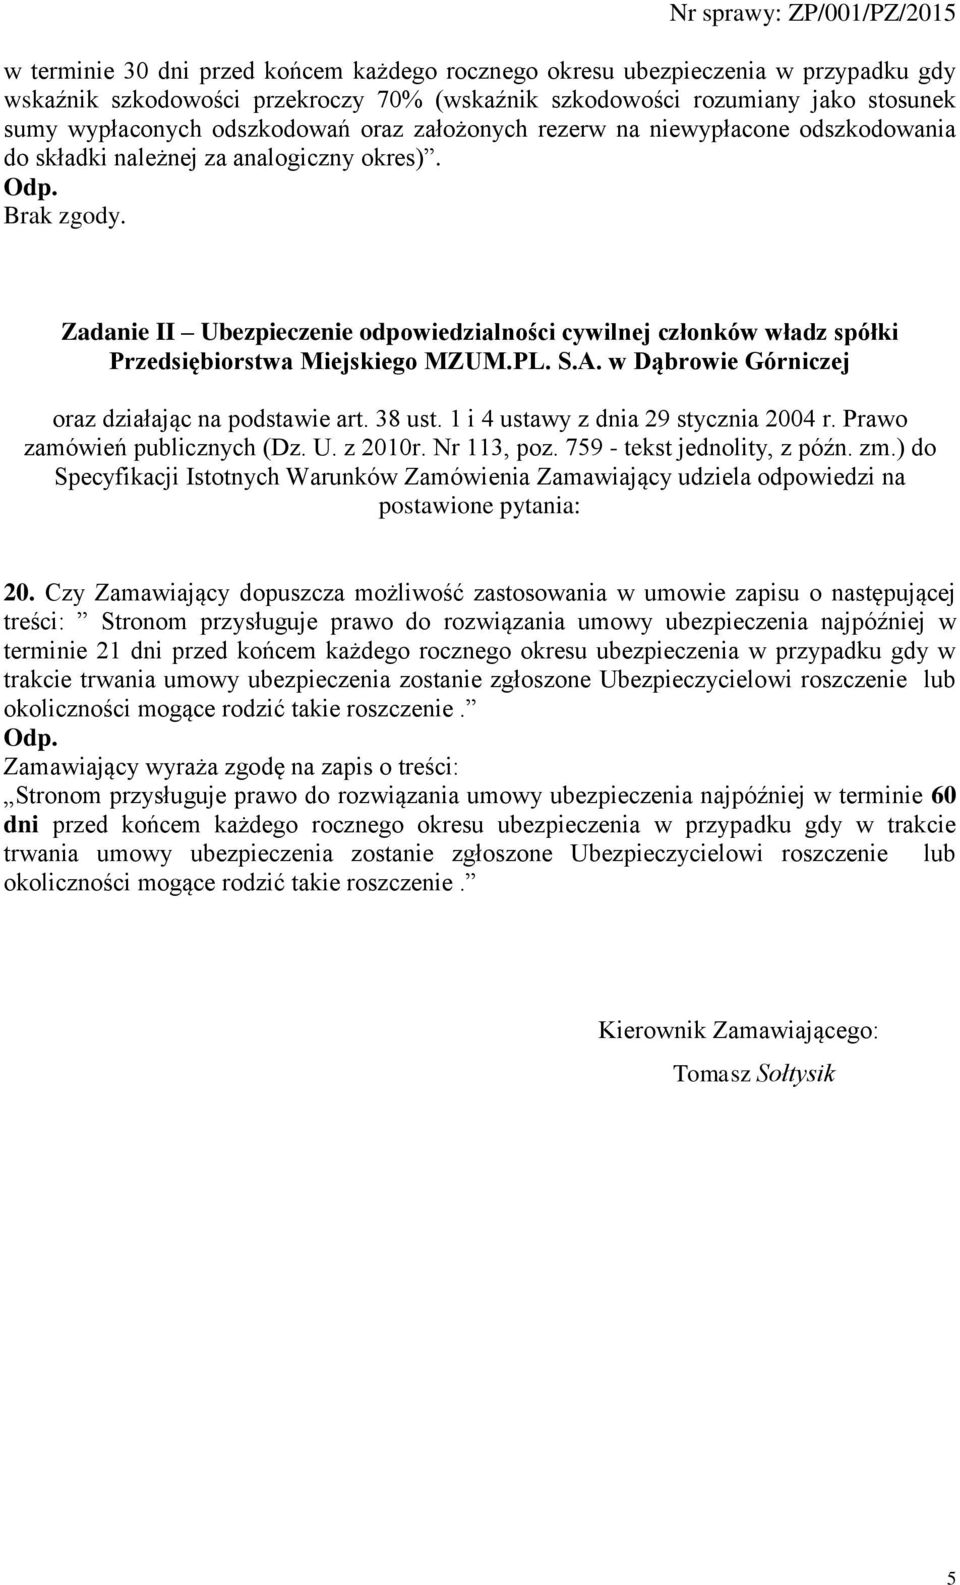 Zadanie II Ubezpieczenie odpowiedzialności cywilnej członków władz spółki Przedsiębiorstwa Miejskiego MZUM.PL. S.A. w Dąbrowie Górniczej oraz działając na podstawie art. 38 ust.